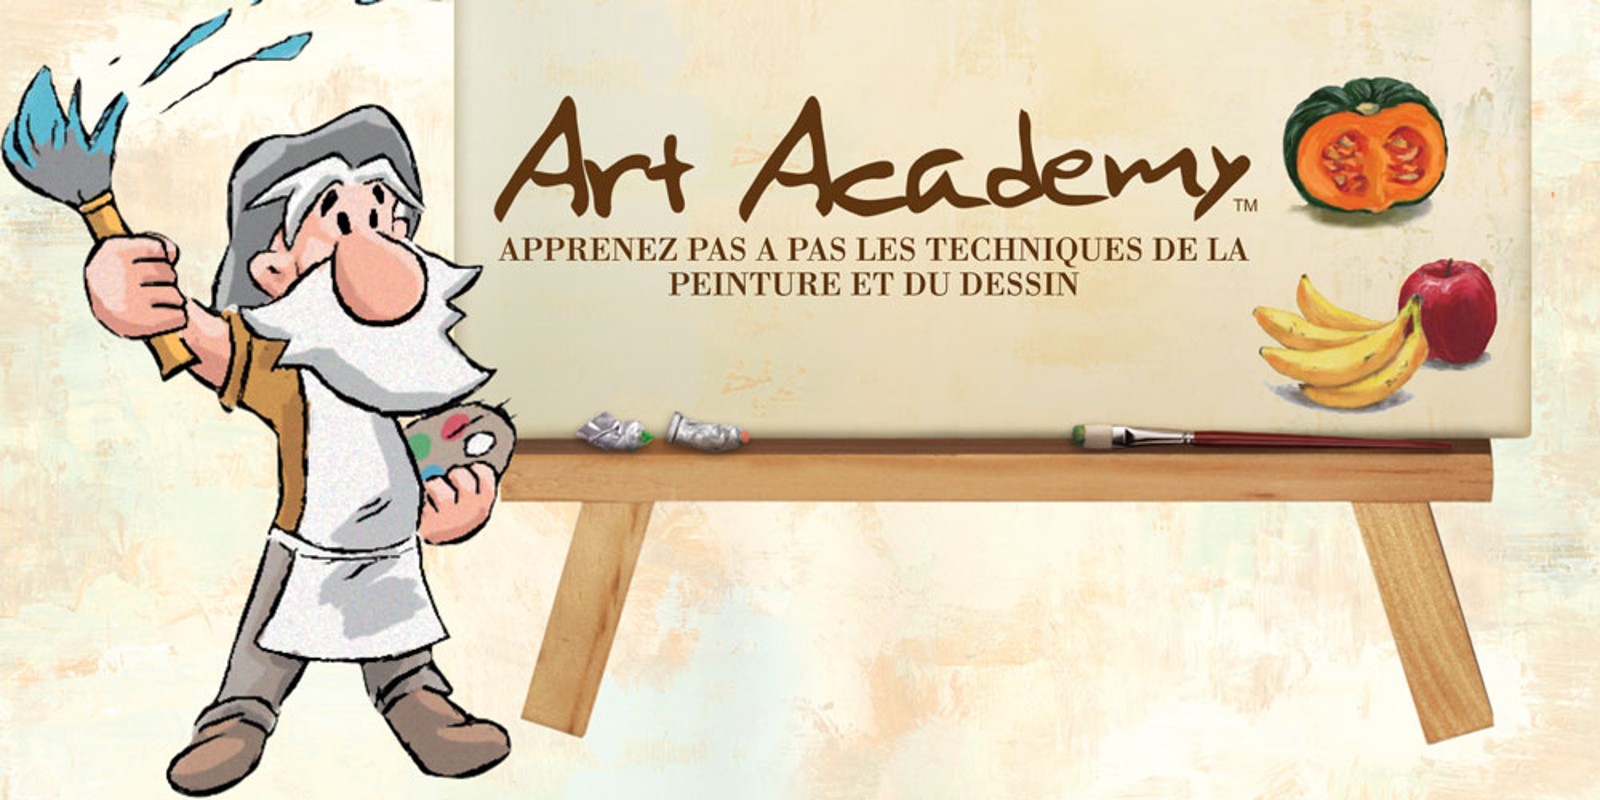 Art Academy : Apprenez pas à pas les techniques de la peinture et du dessin